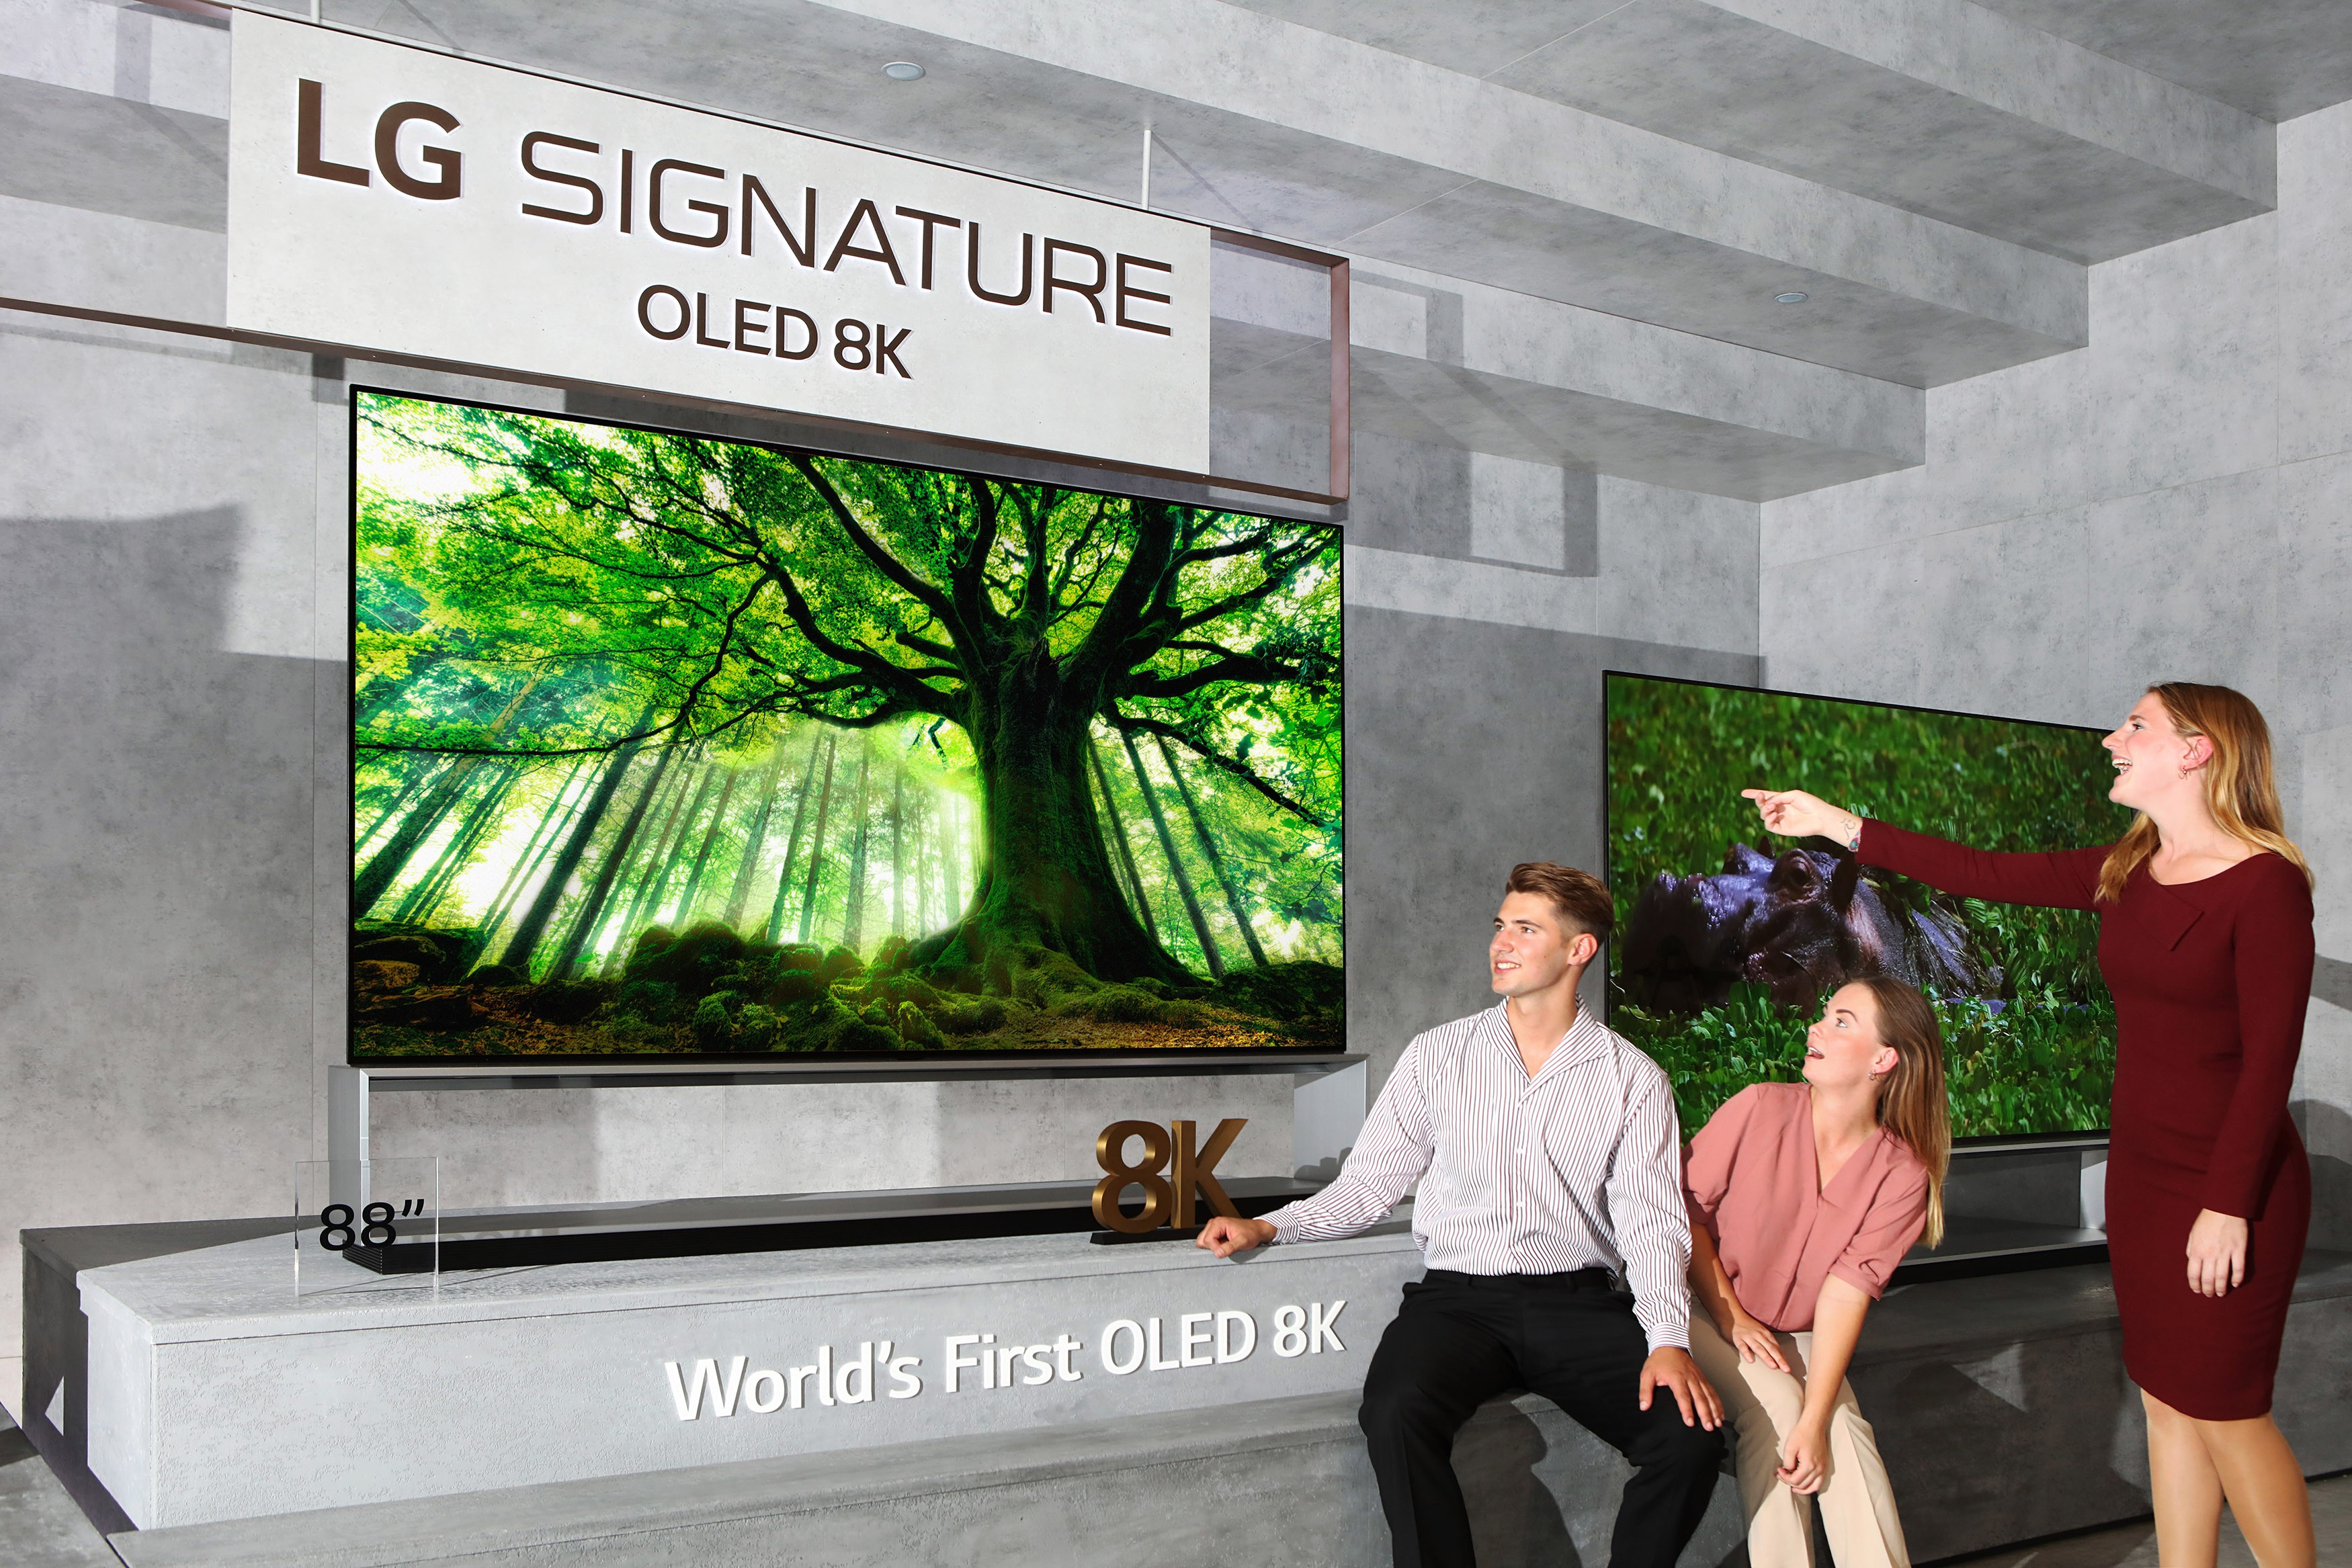 Последний телевизор lg. LG Signature 88 8k OLED. LG OLED 8k. LG Signature 88 8k OLED телевизор. LG Signature OLED 88 дюймов.